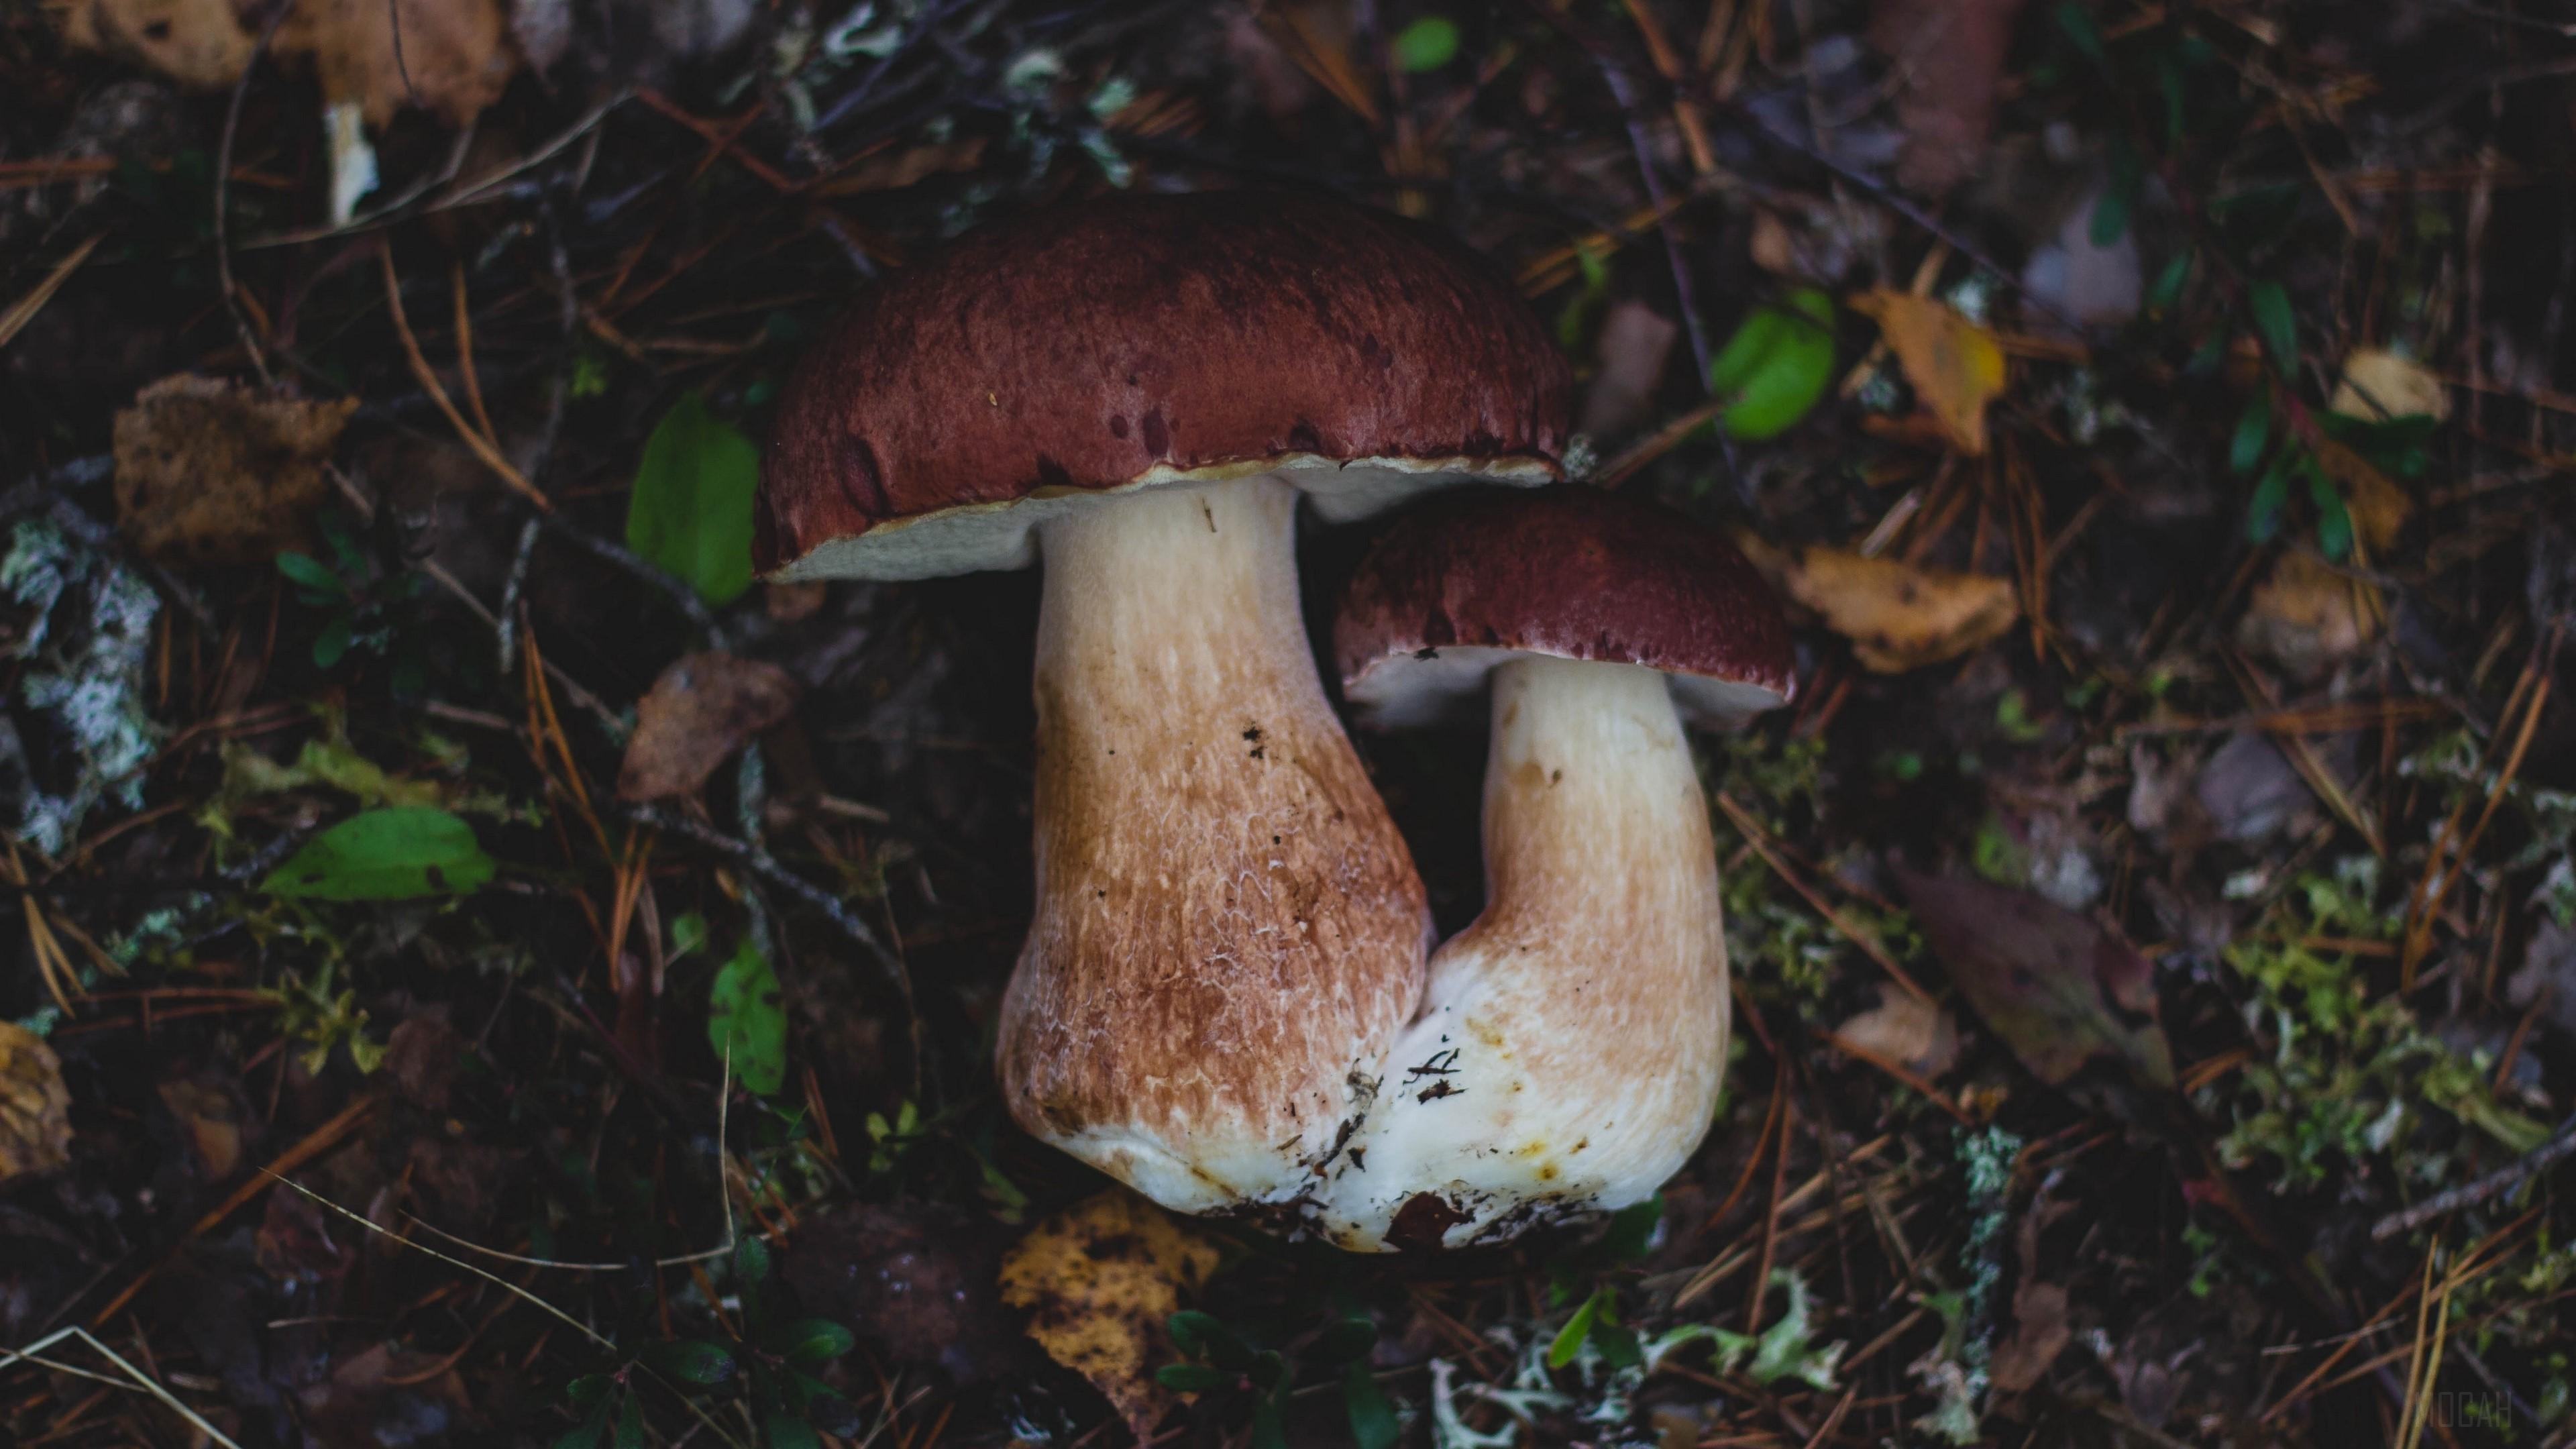 HD wallpaper, Mushrooms, Autumn, Foliage 4K